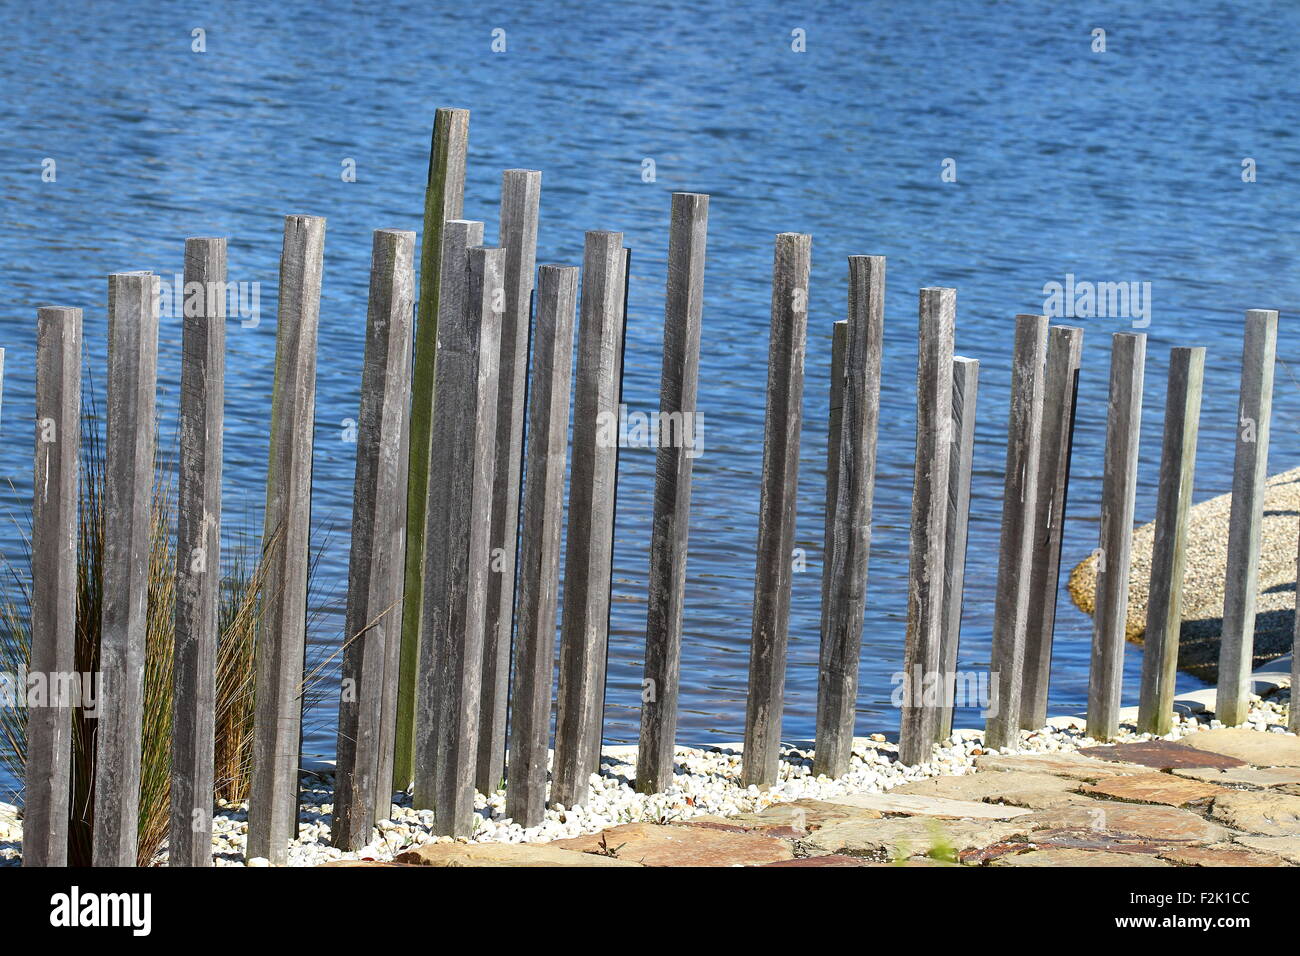 Clôture en bois près du lac, à l'Australian Garden Cranbourne Victoria Australie Banque D'Images